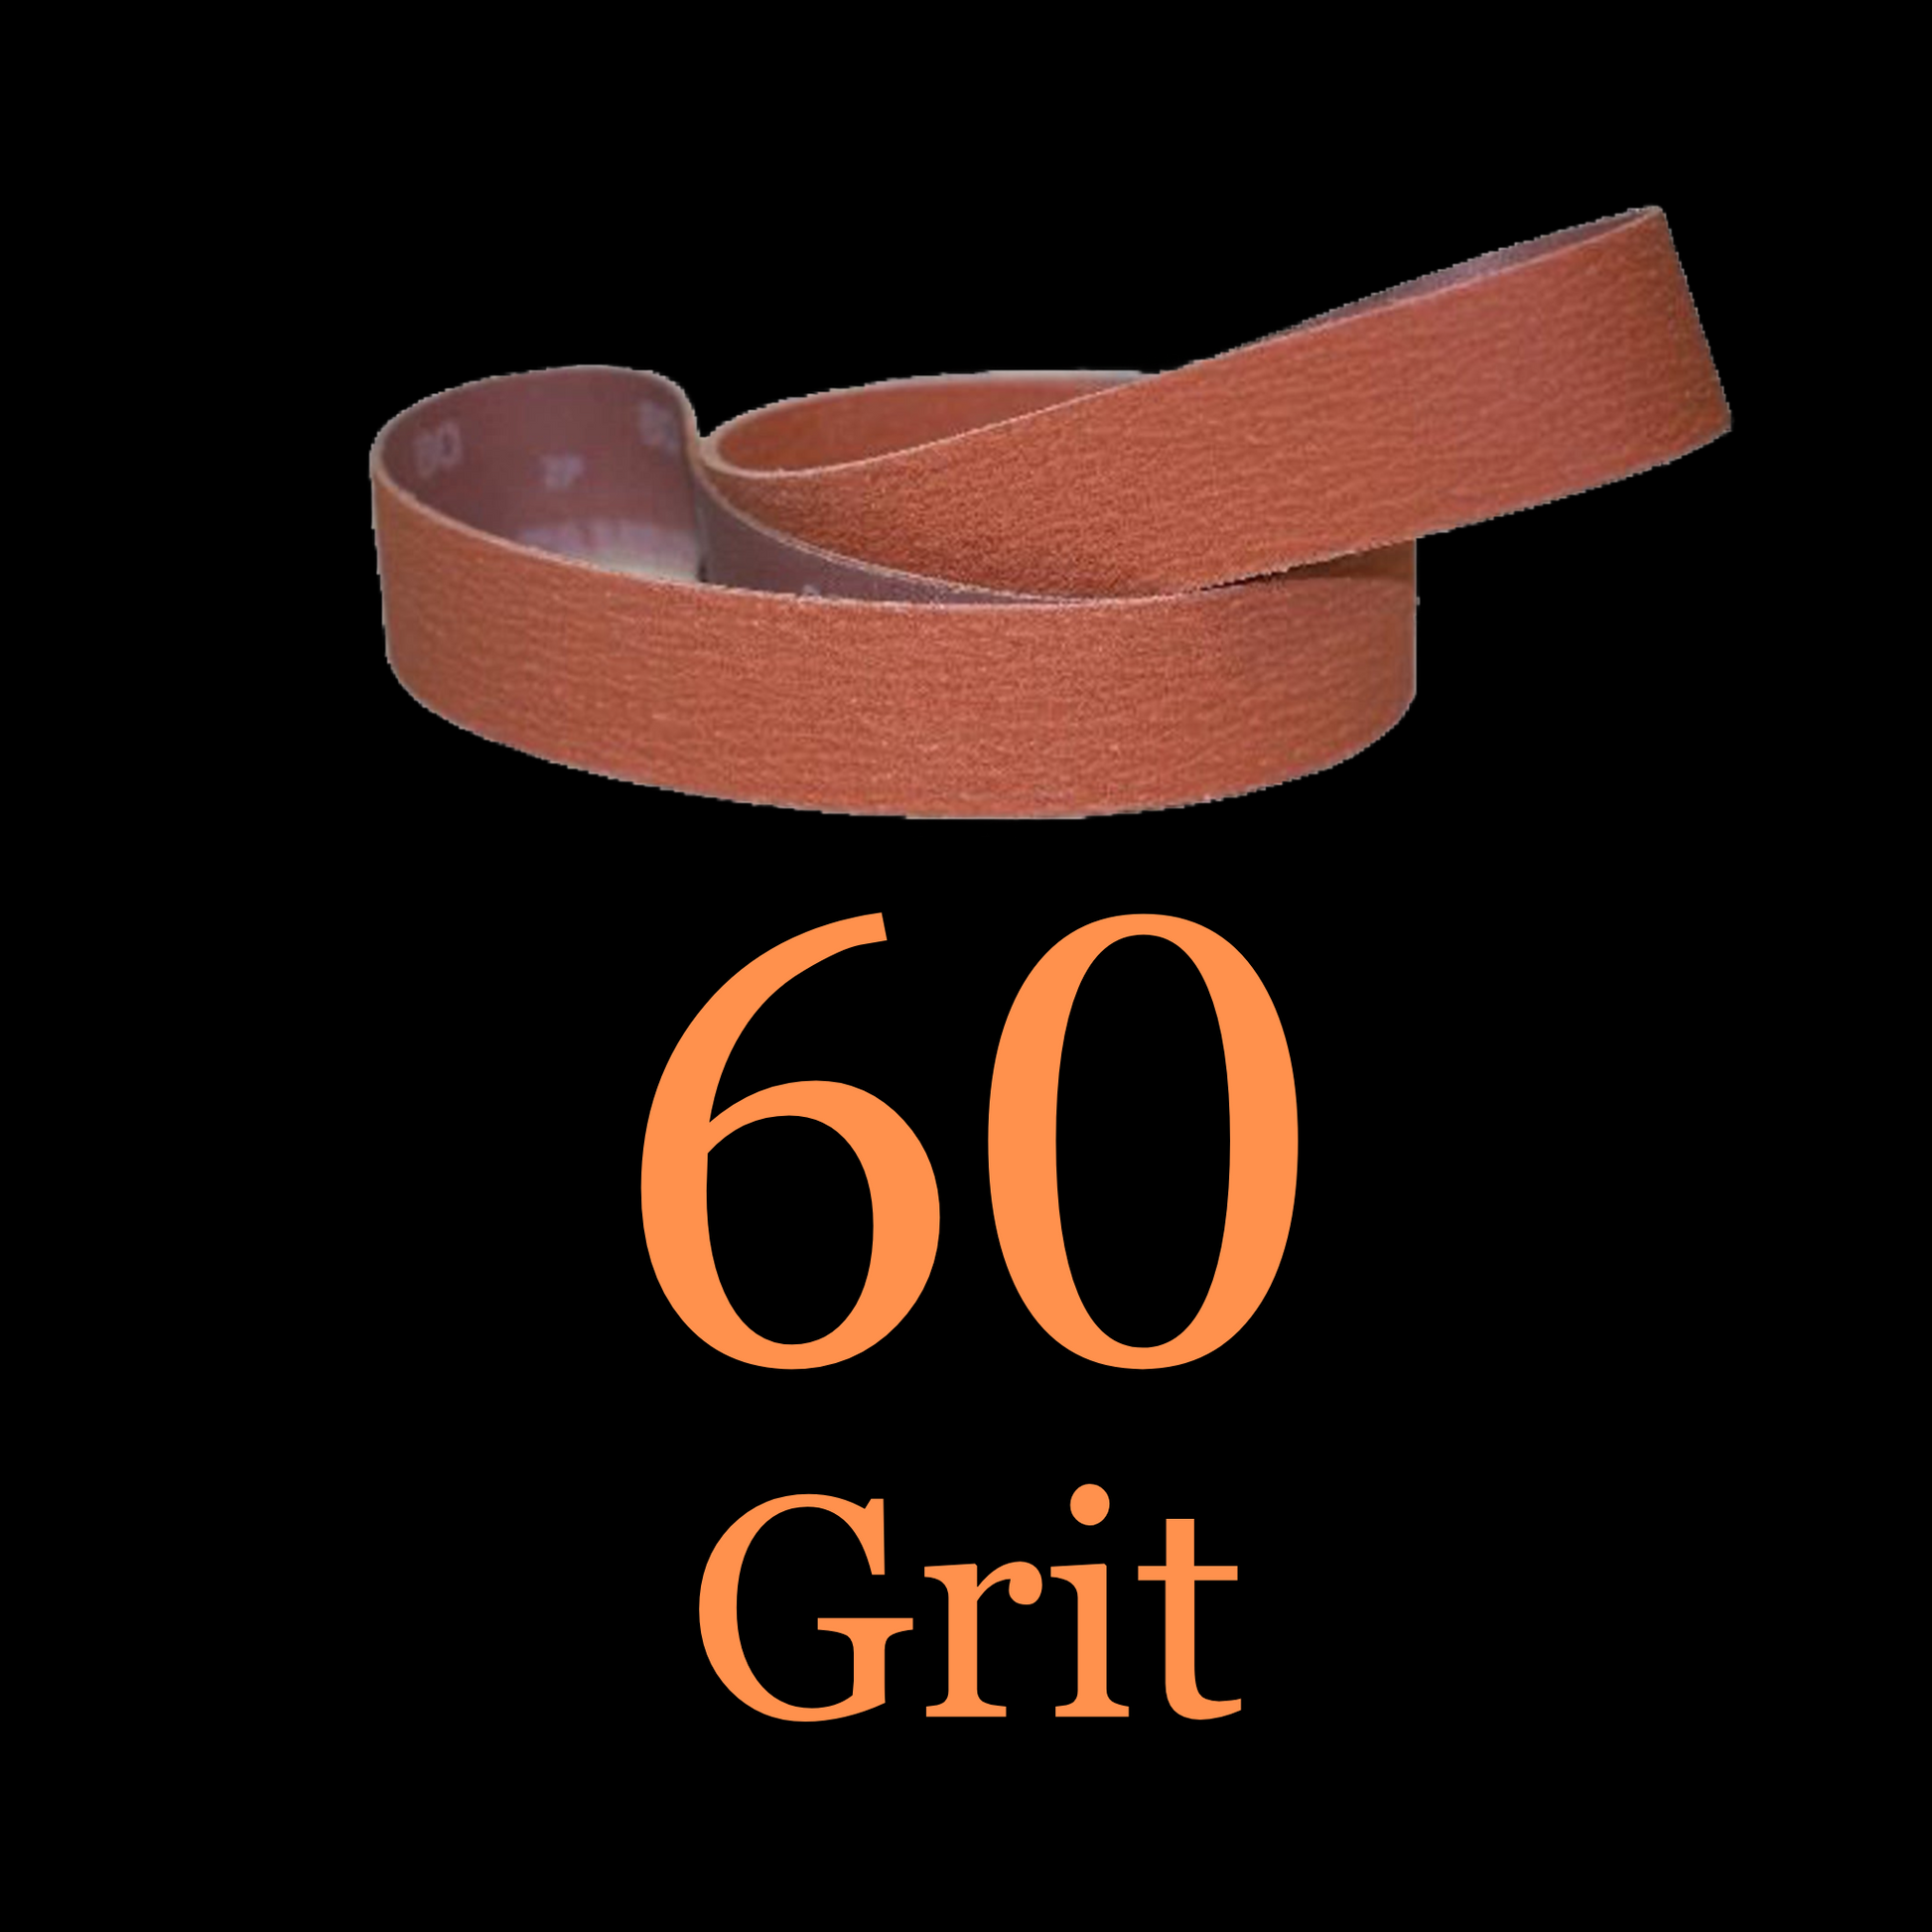 2” x 42” Ceramic Blaze Grinder Belt 60 Grit